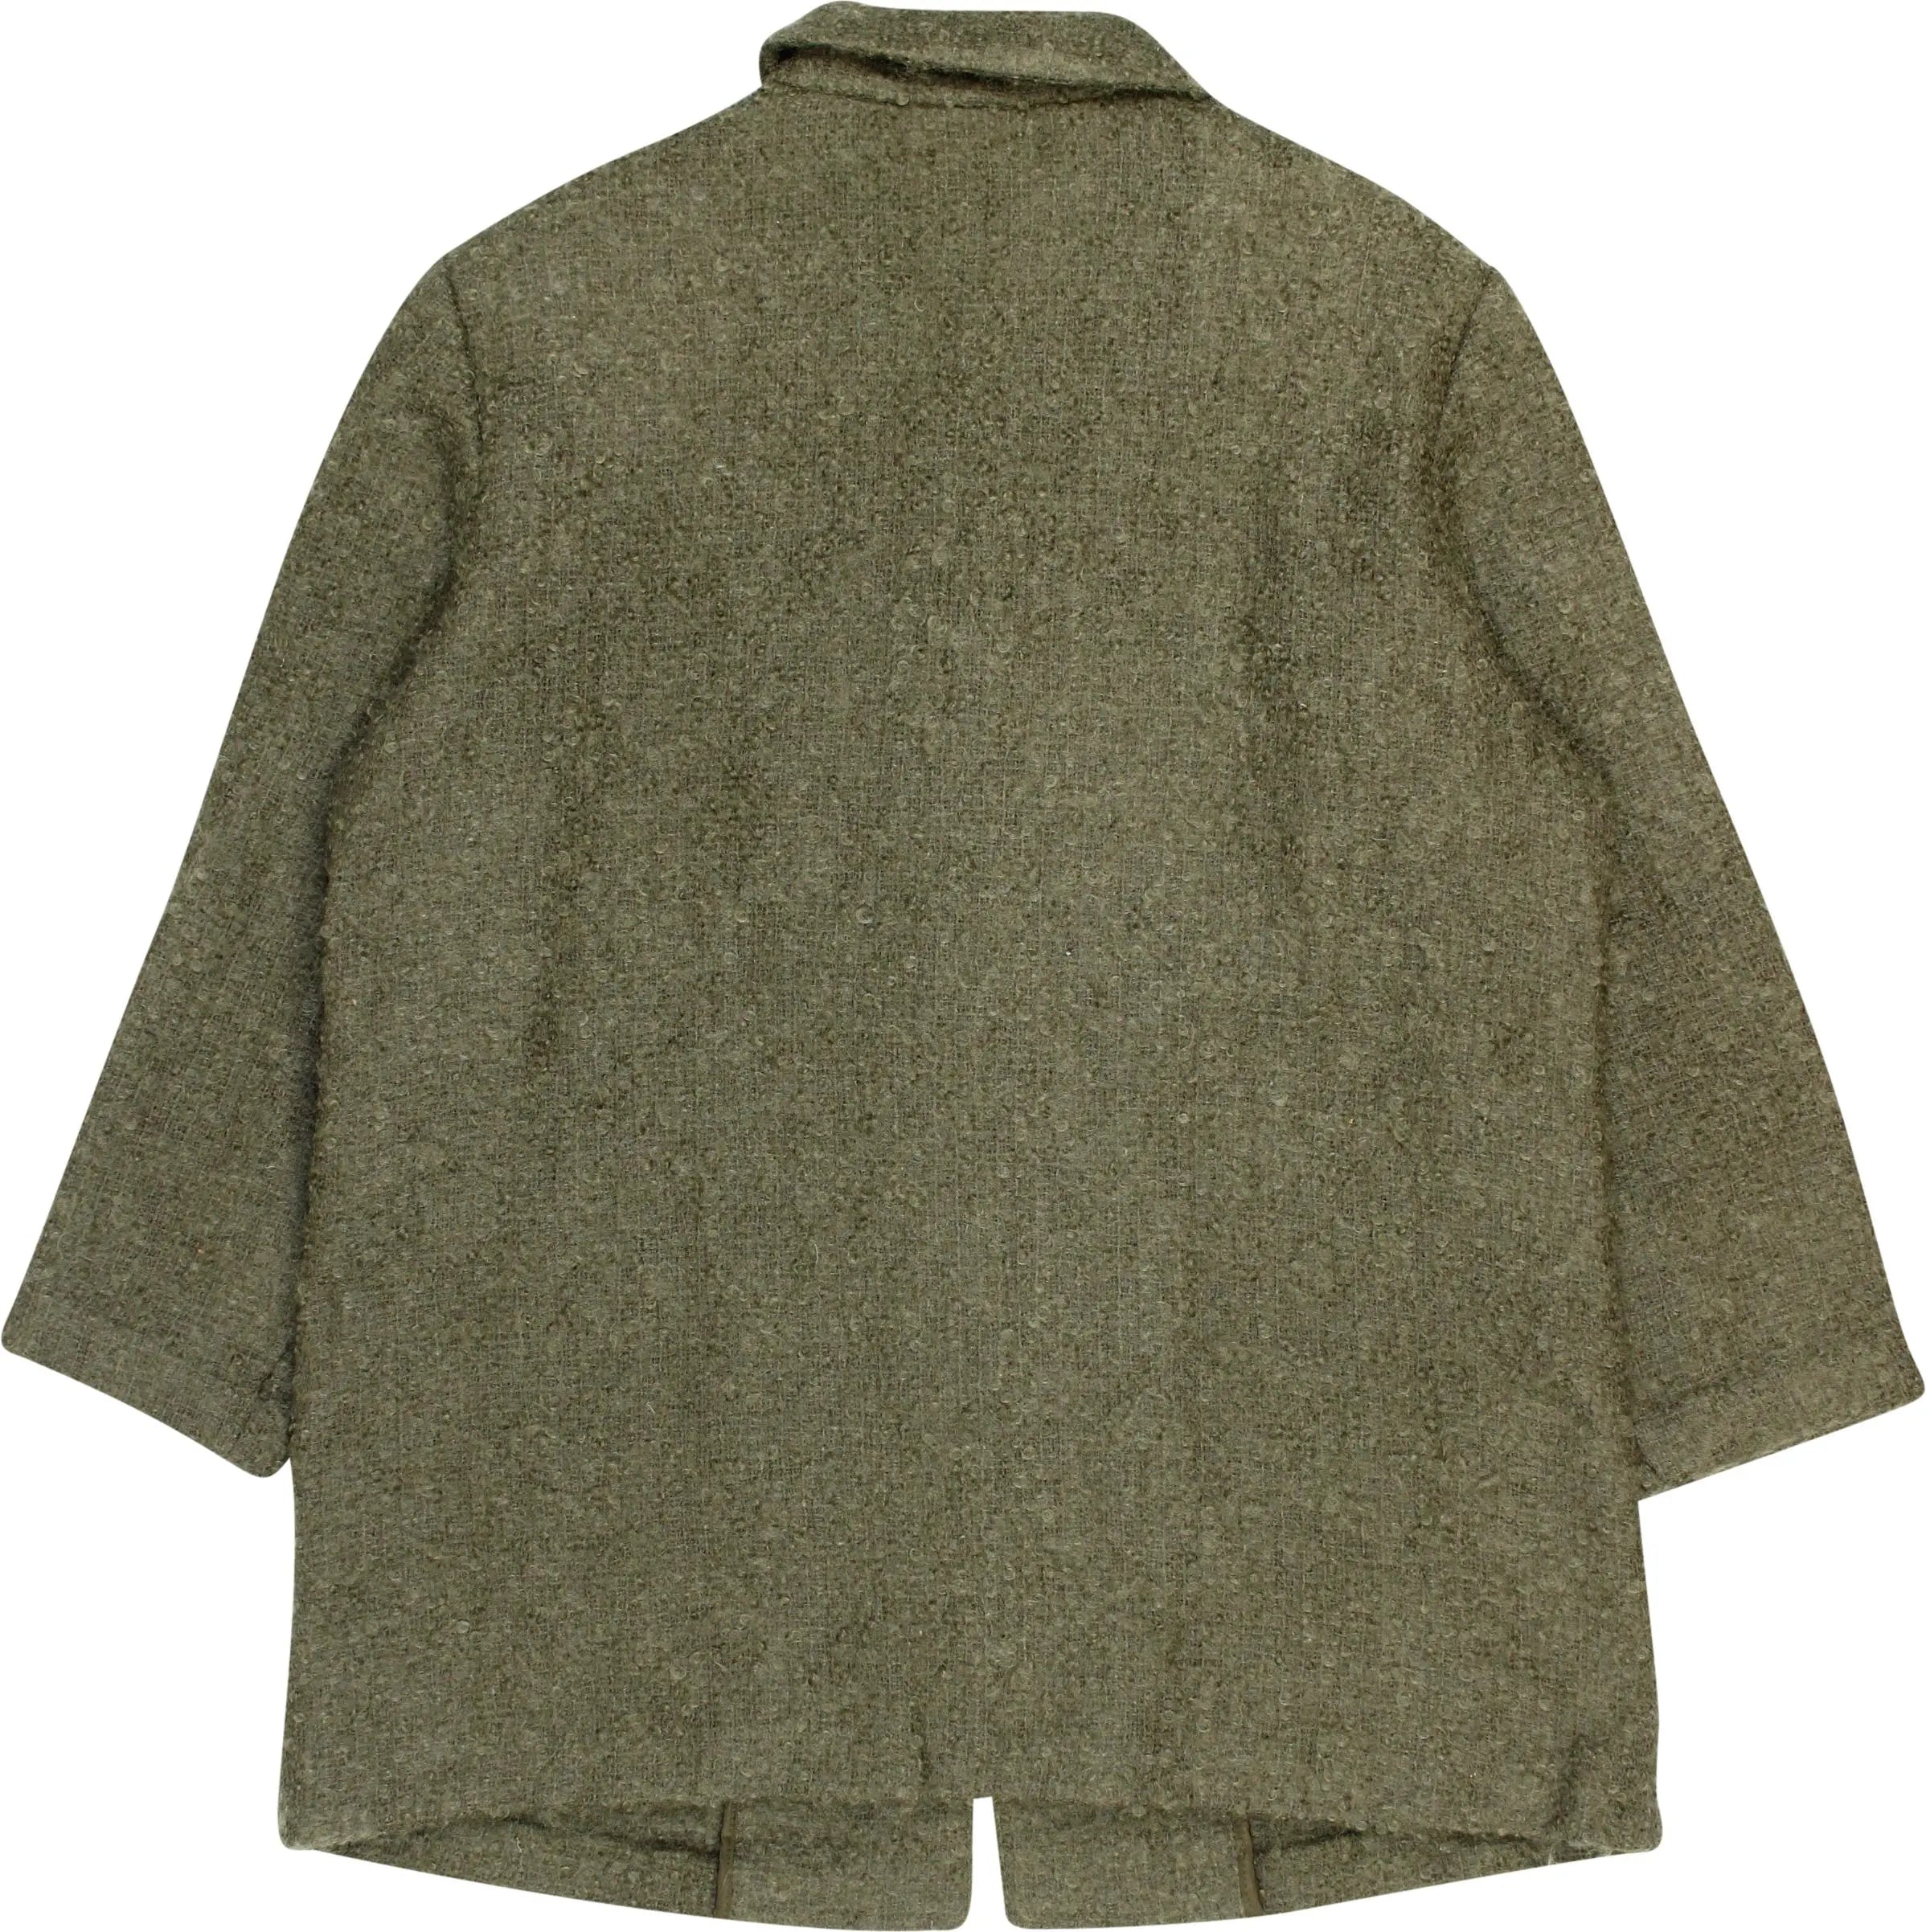 Frankenwälder - Green Wool Blend Jumper- ThriftTale.com - Vintage and second handclothing